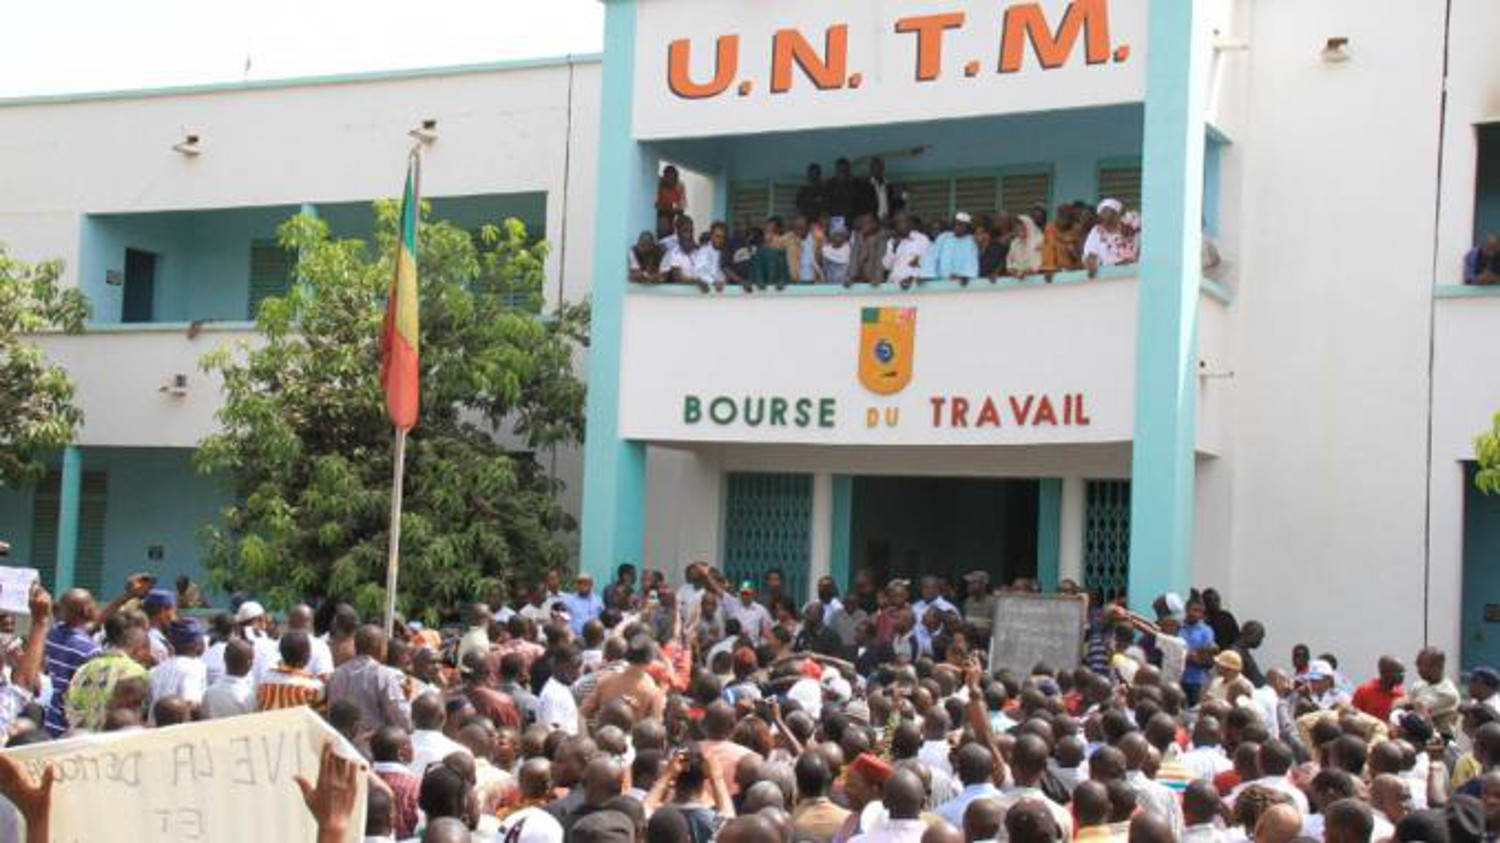 UNTM-Gouvernement : Les accords trouvés et le préavis de grève levé